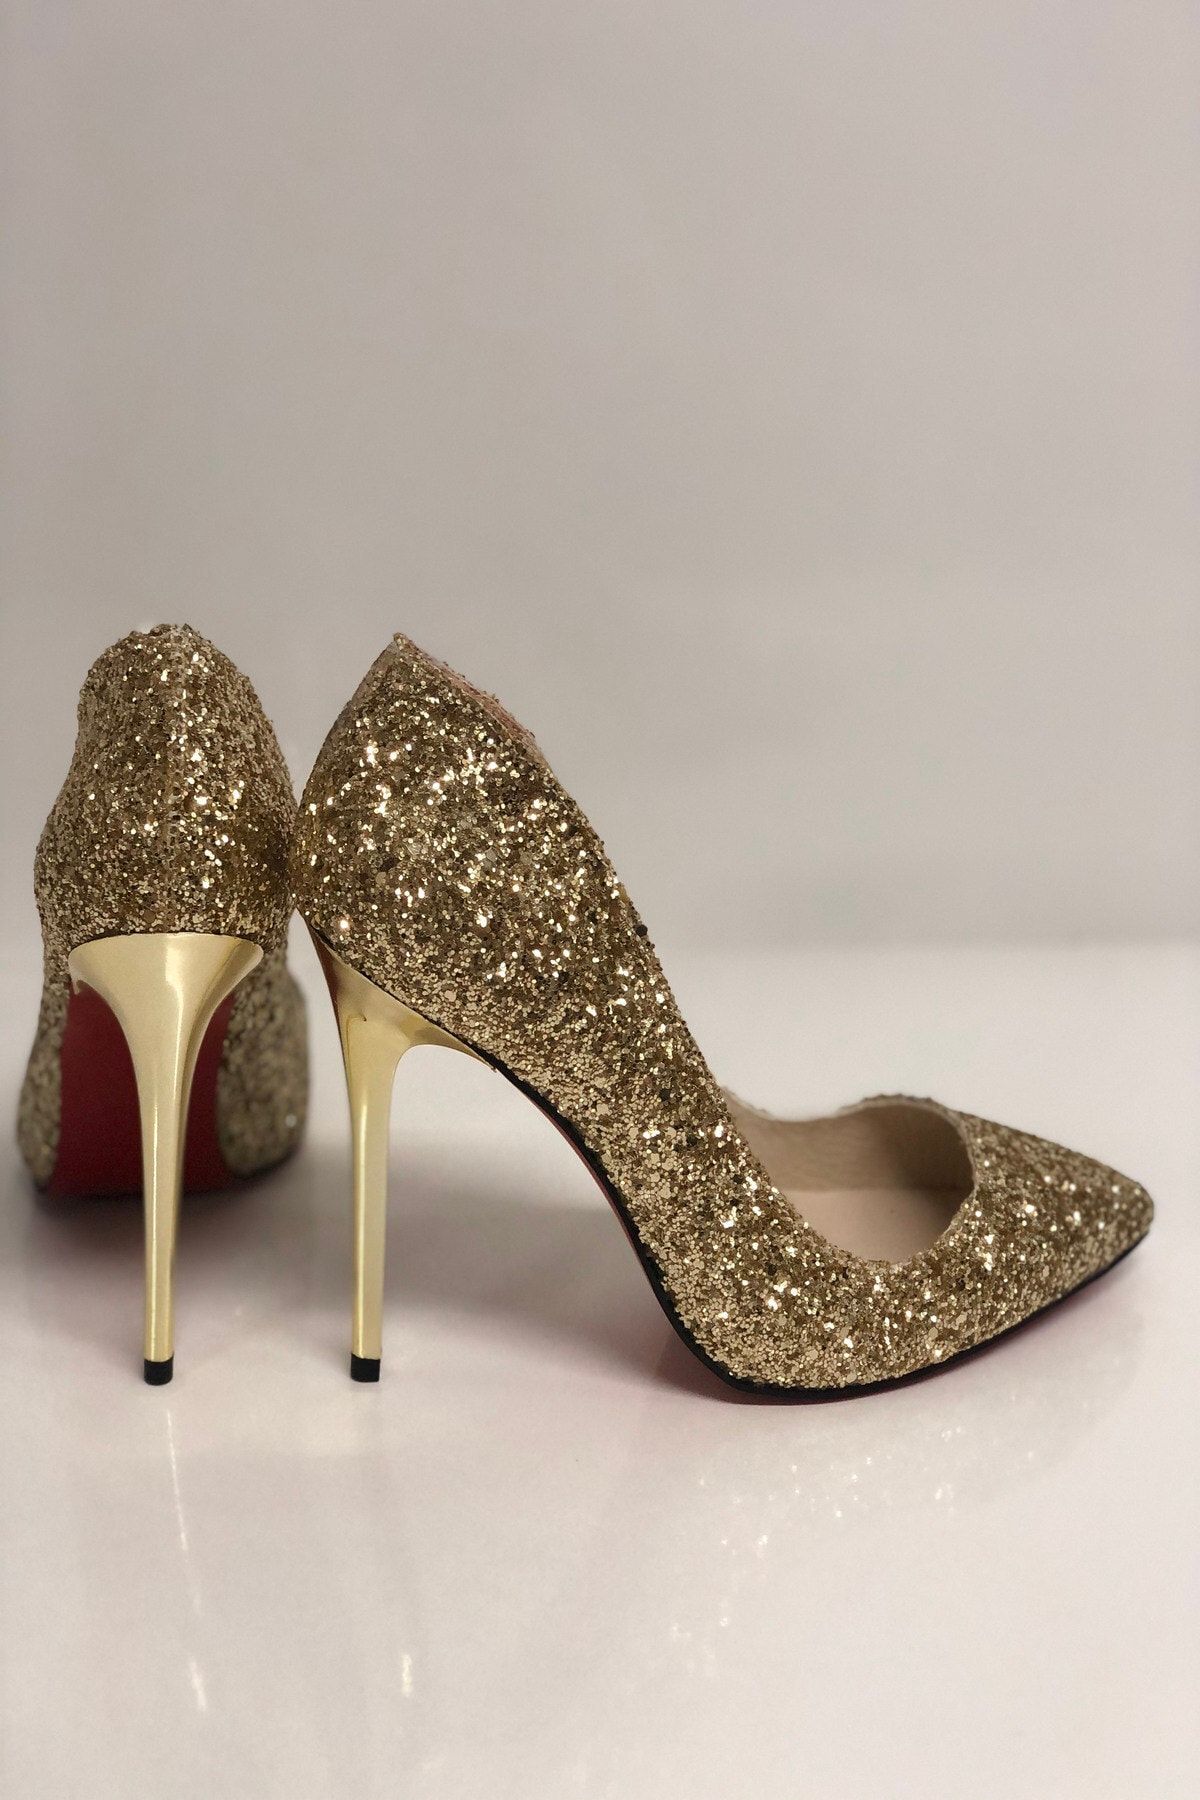 HAYYSHOES Kadın Altın Cam Kırığı Topuklu Ayakkabı